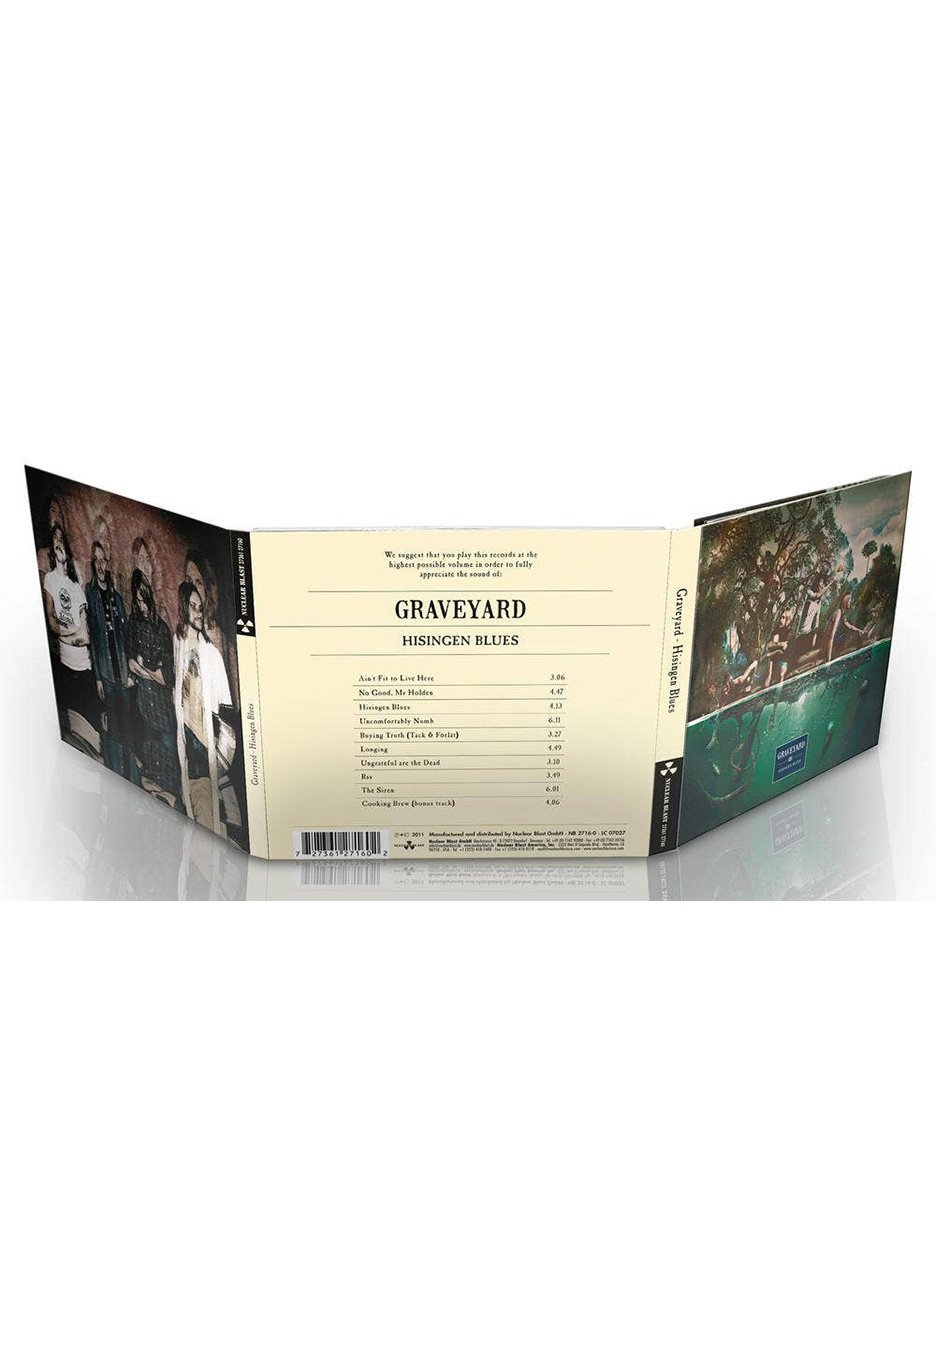 Graveyard - Hisingen Blues - Digipak CD